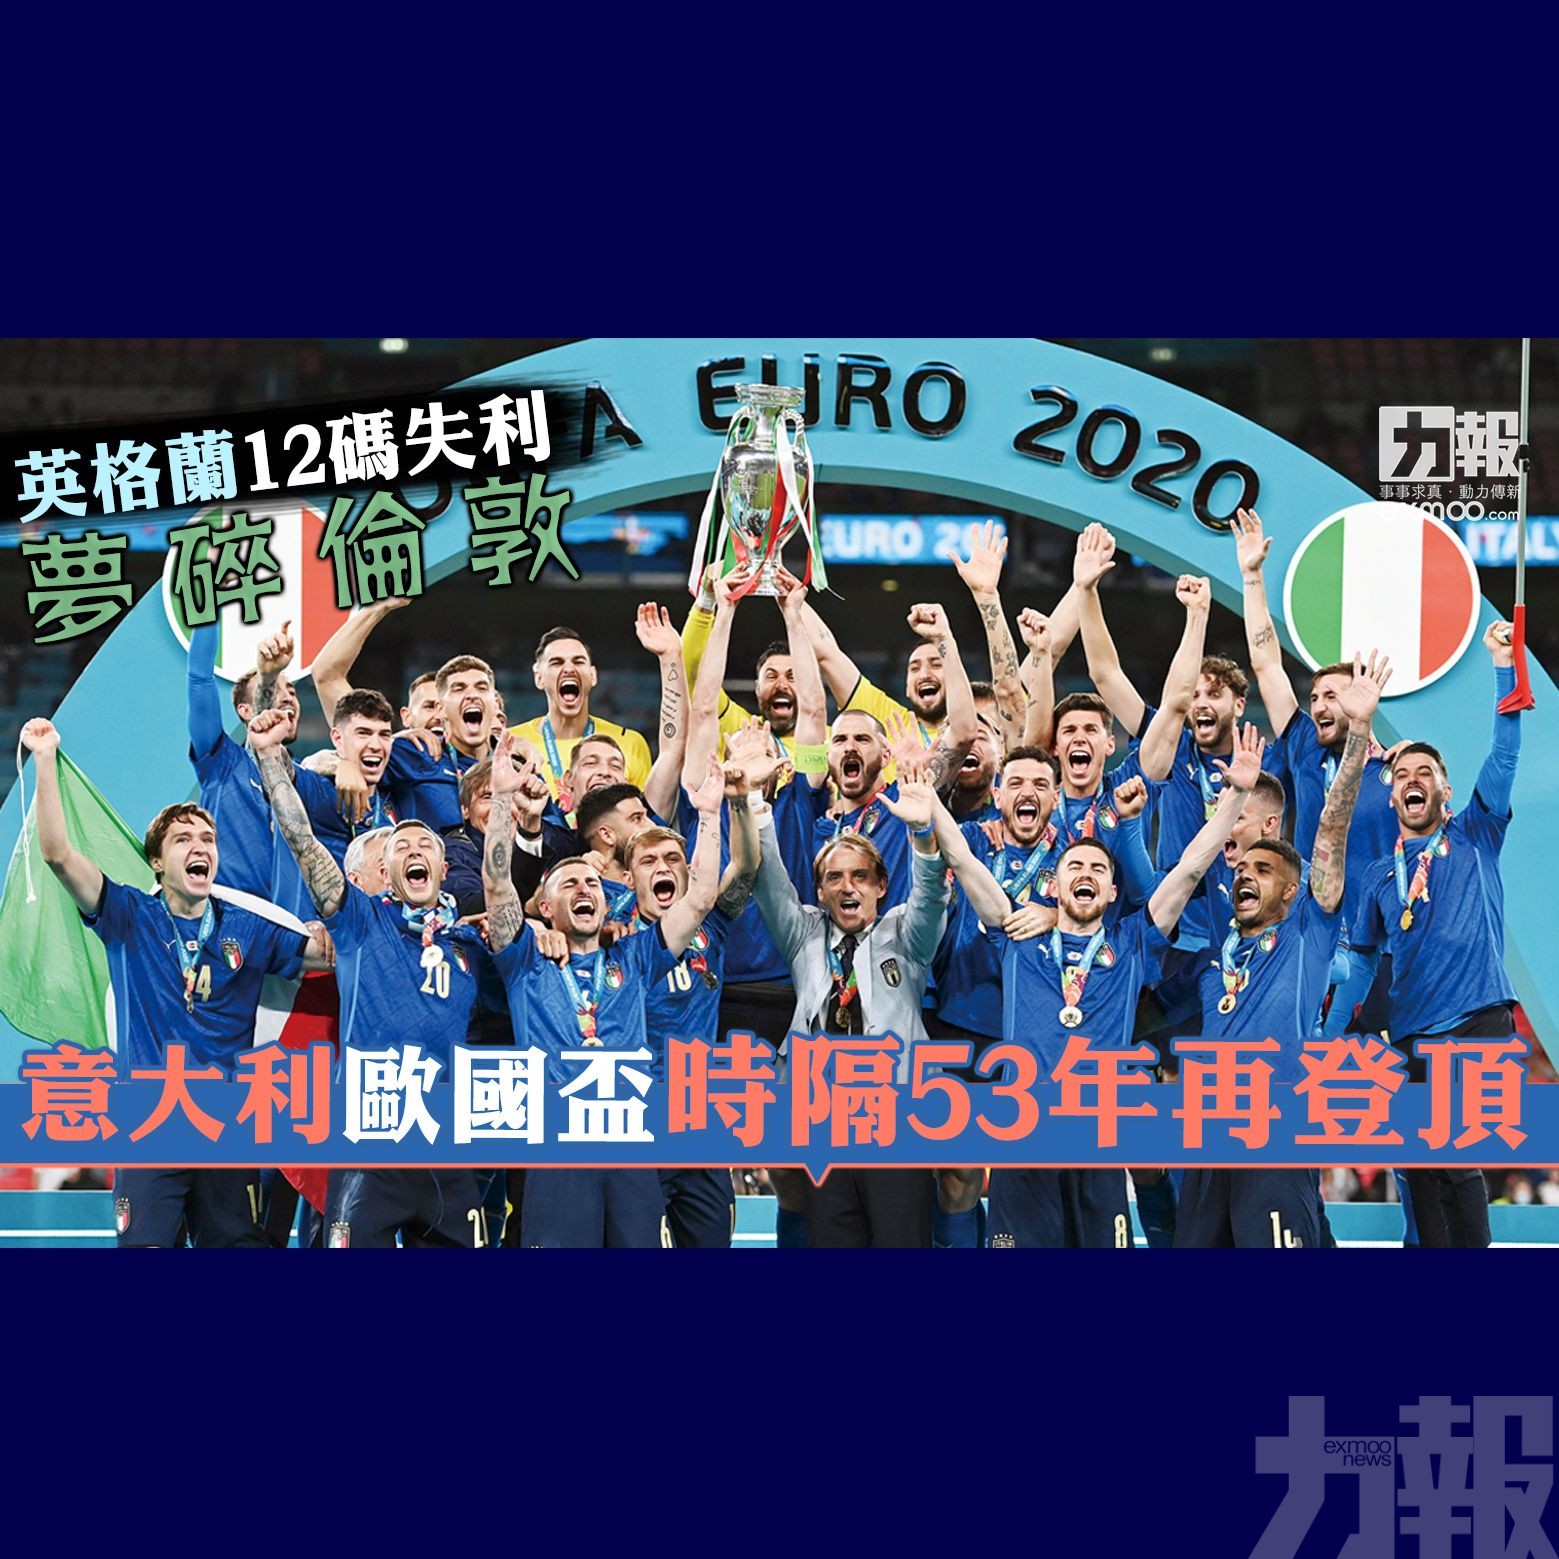 意大利歐國盃時隔53年再登頂